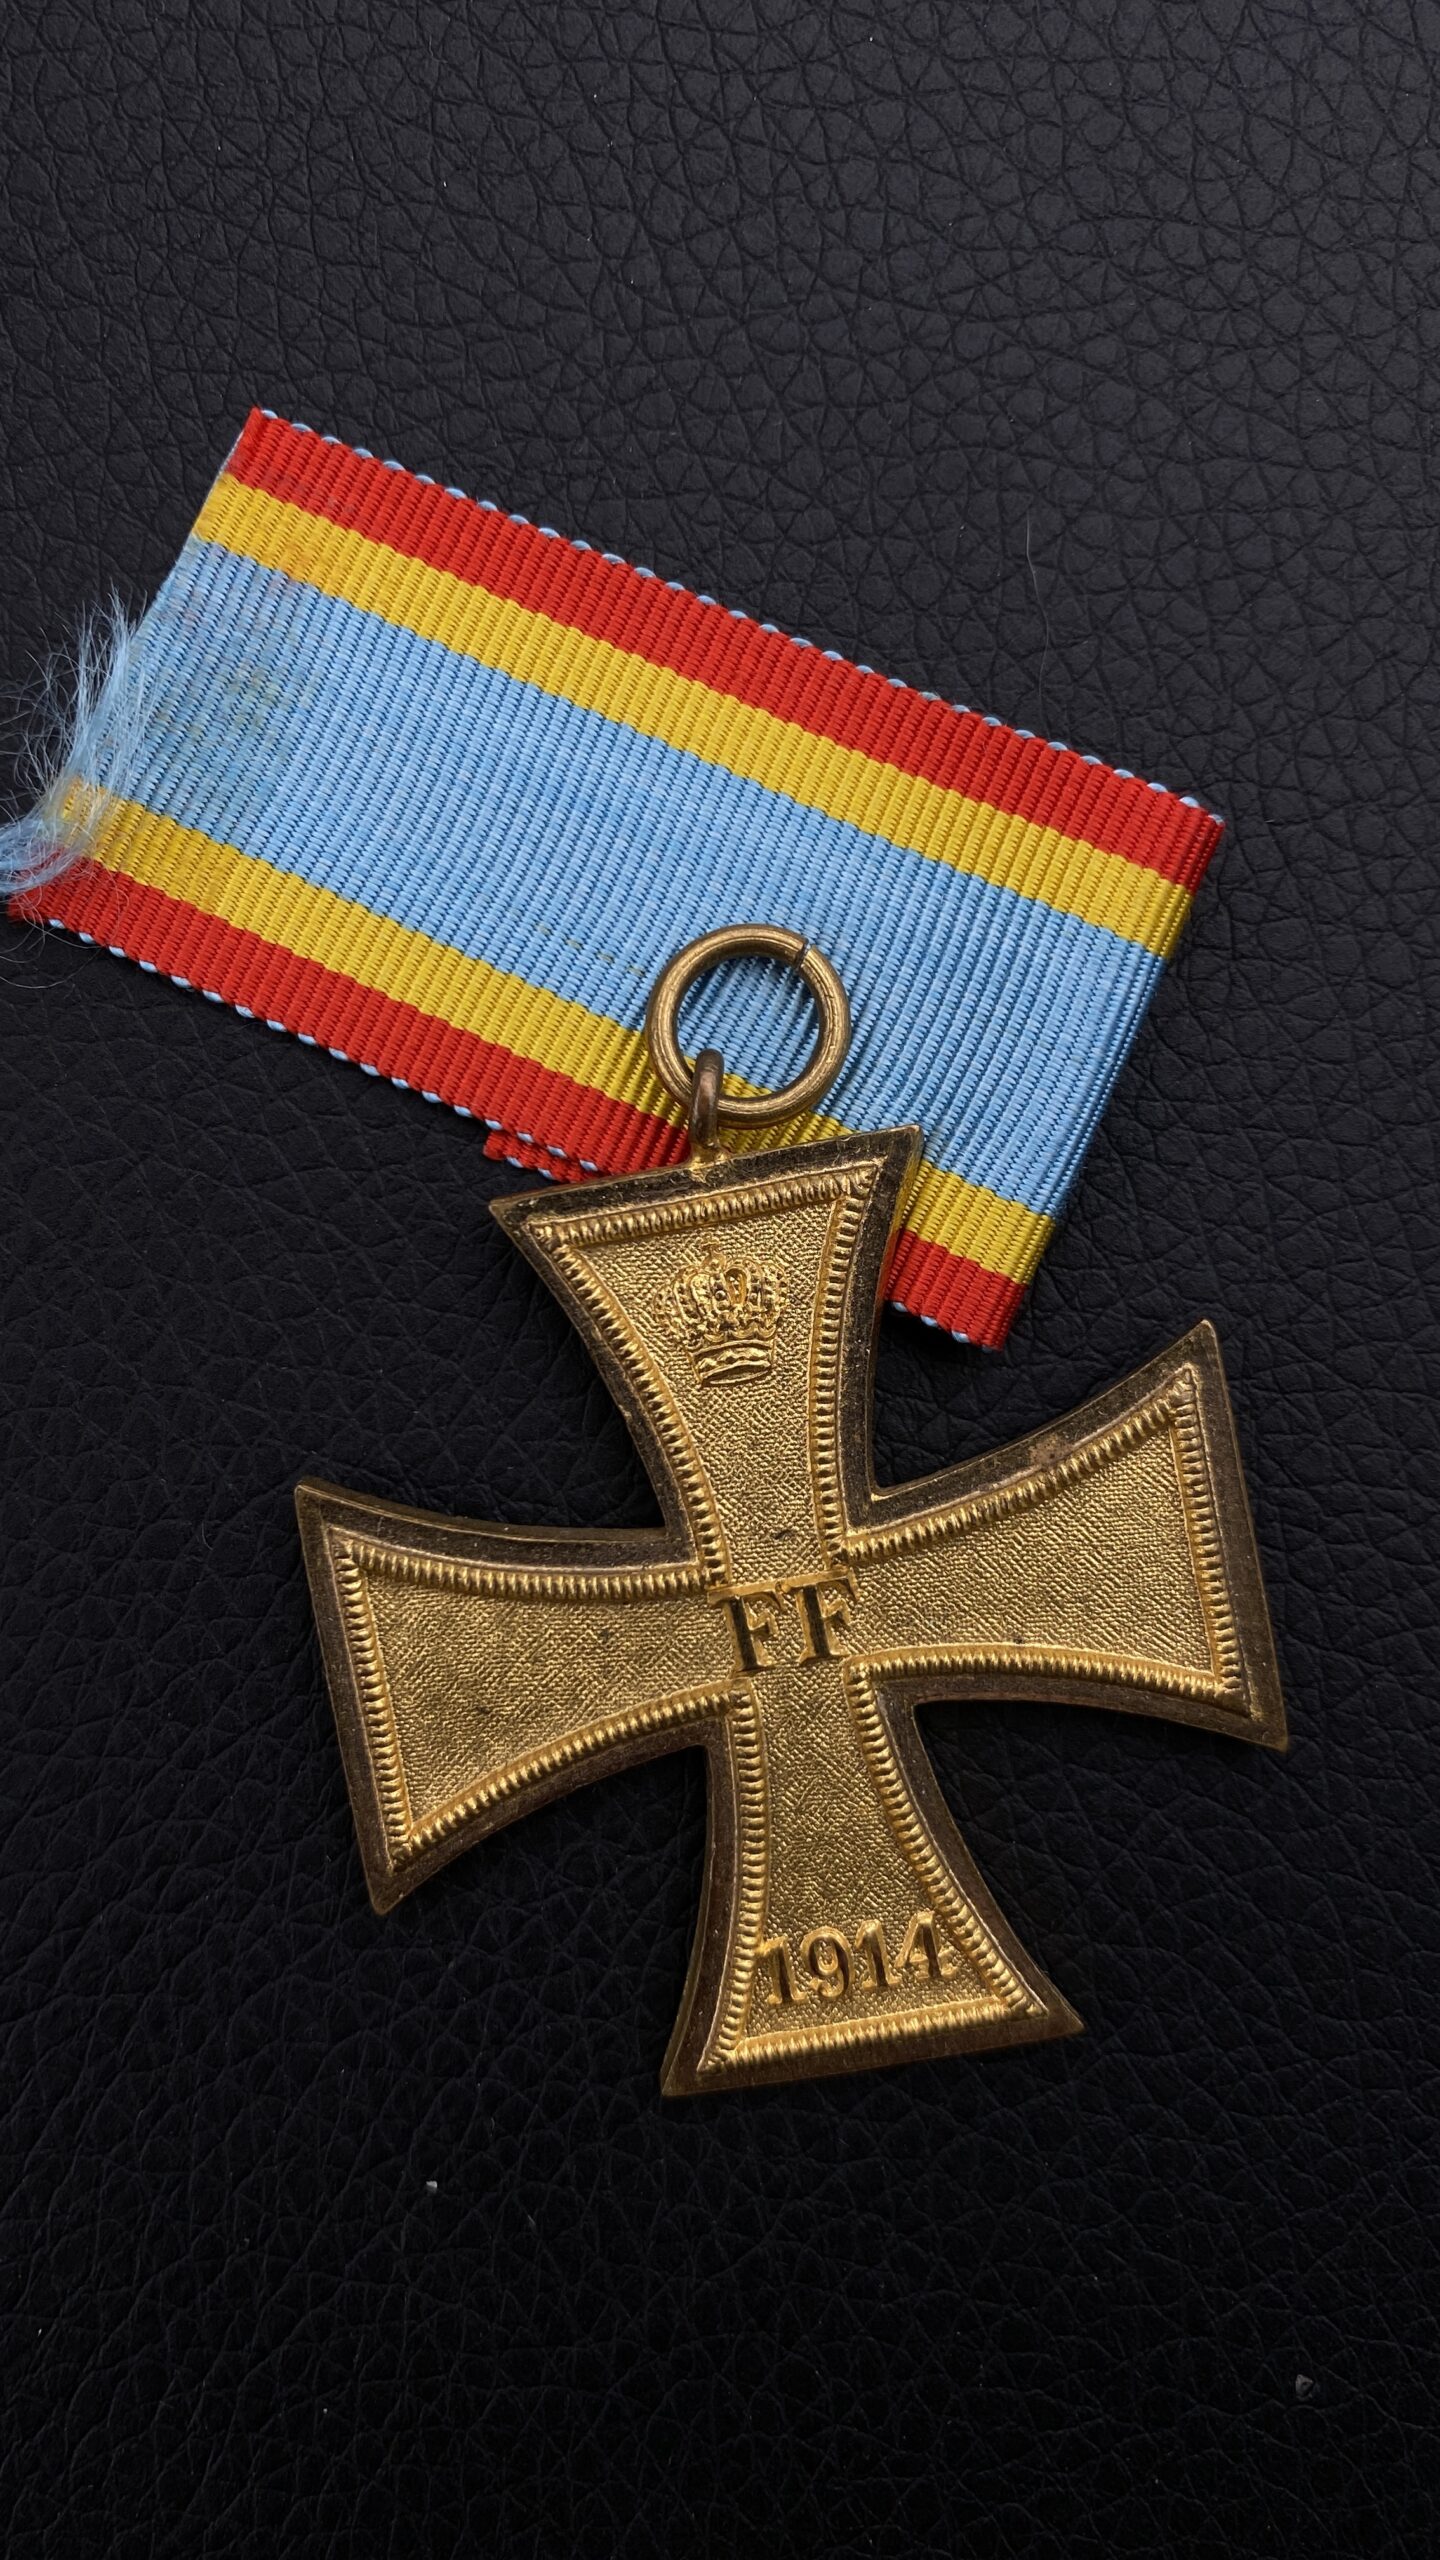 Земельный крест военных заслуг II класса Великого герцогства Мекленбург-Шверин – Friedrich Franz Kreuz (Mecklenburg-Schwerin).